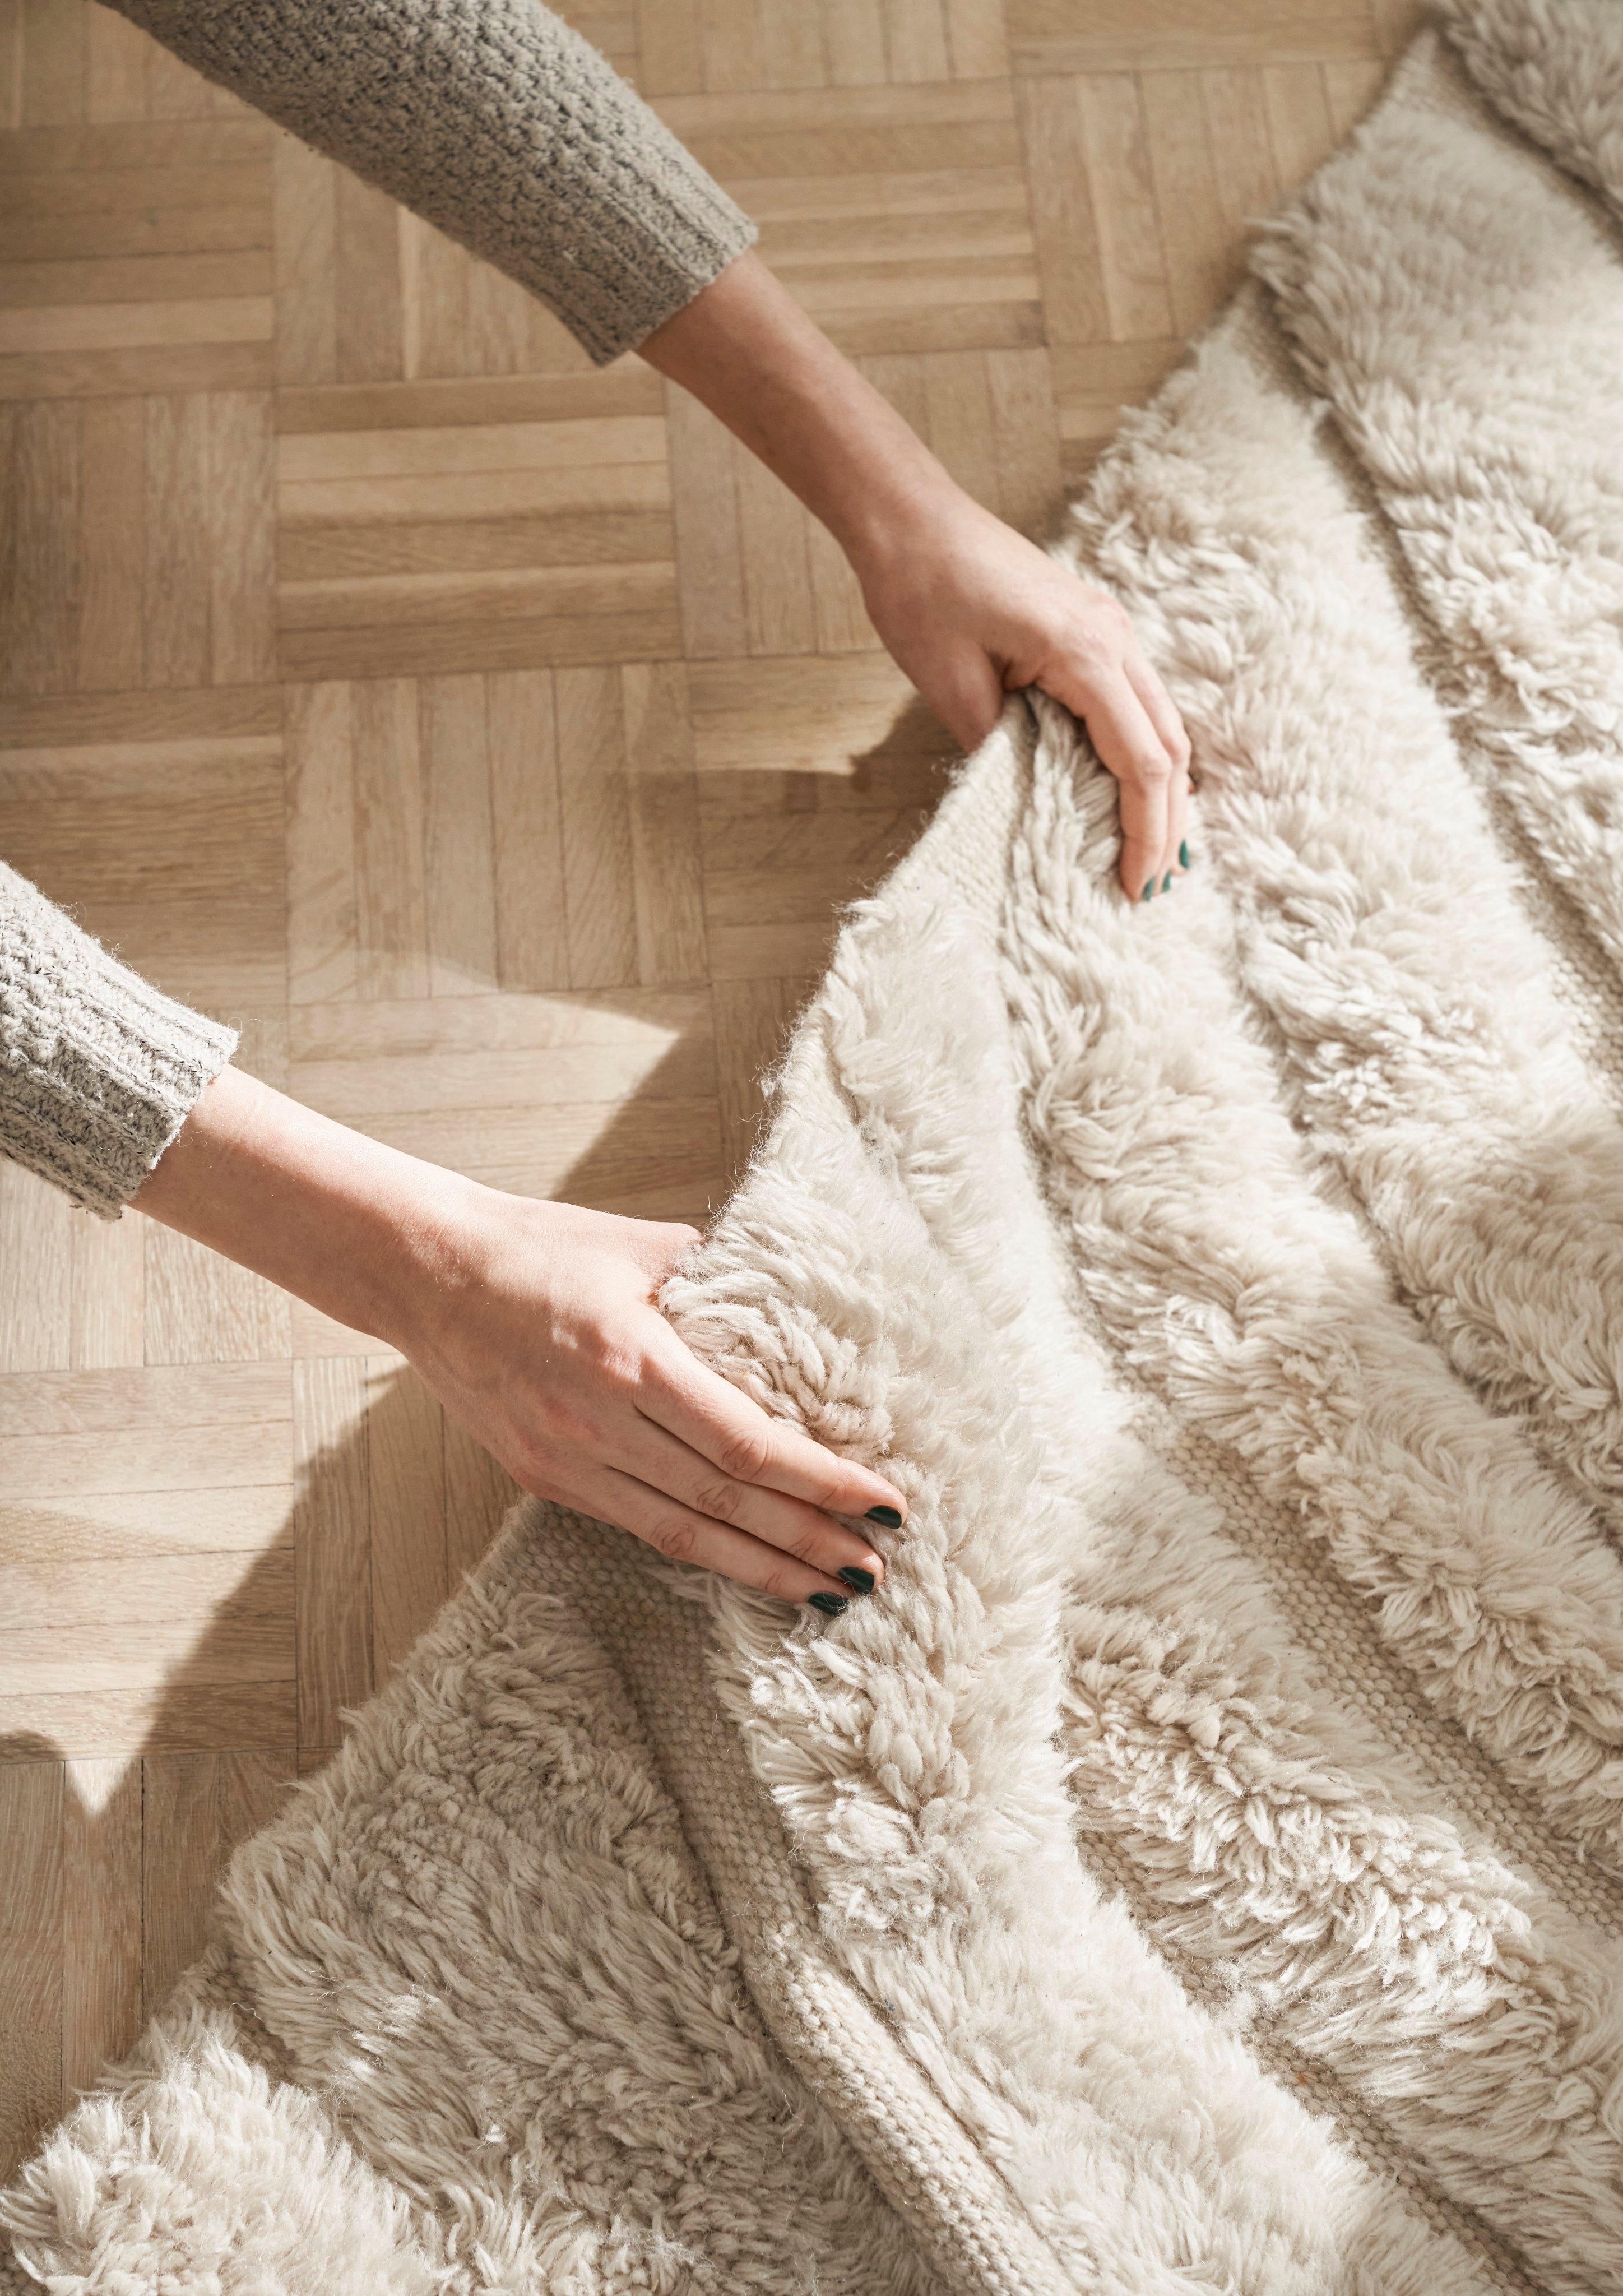 Les mains d’une personne ressentant la texture du tapis Form.